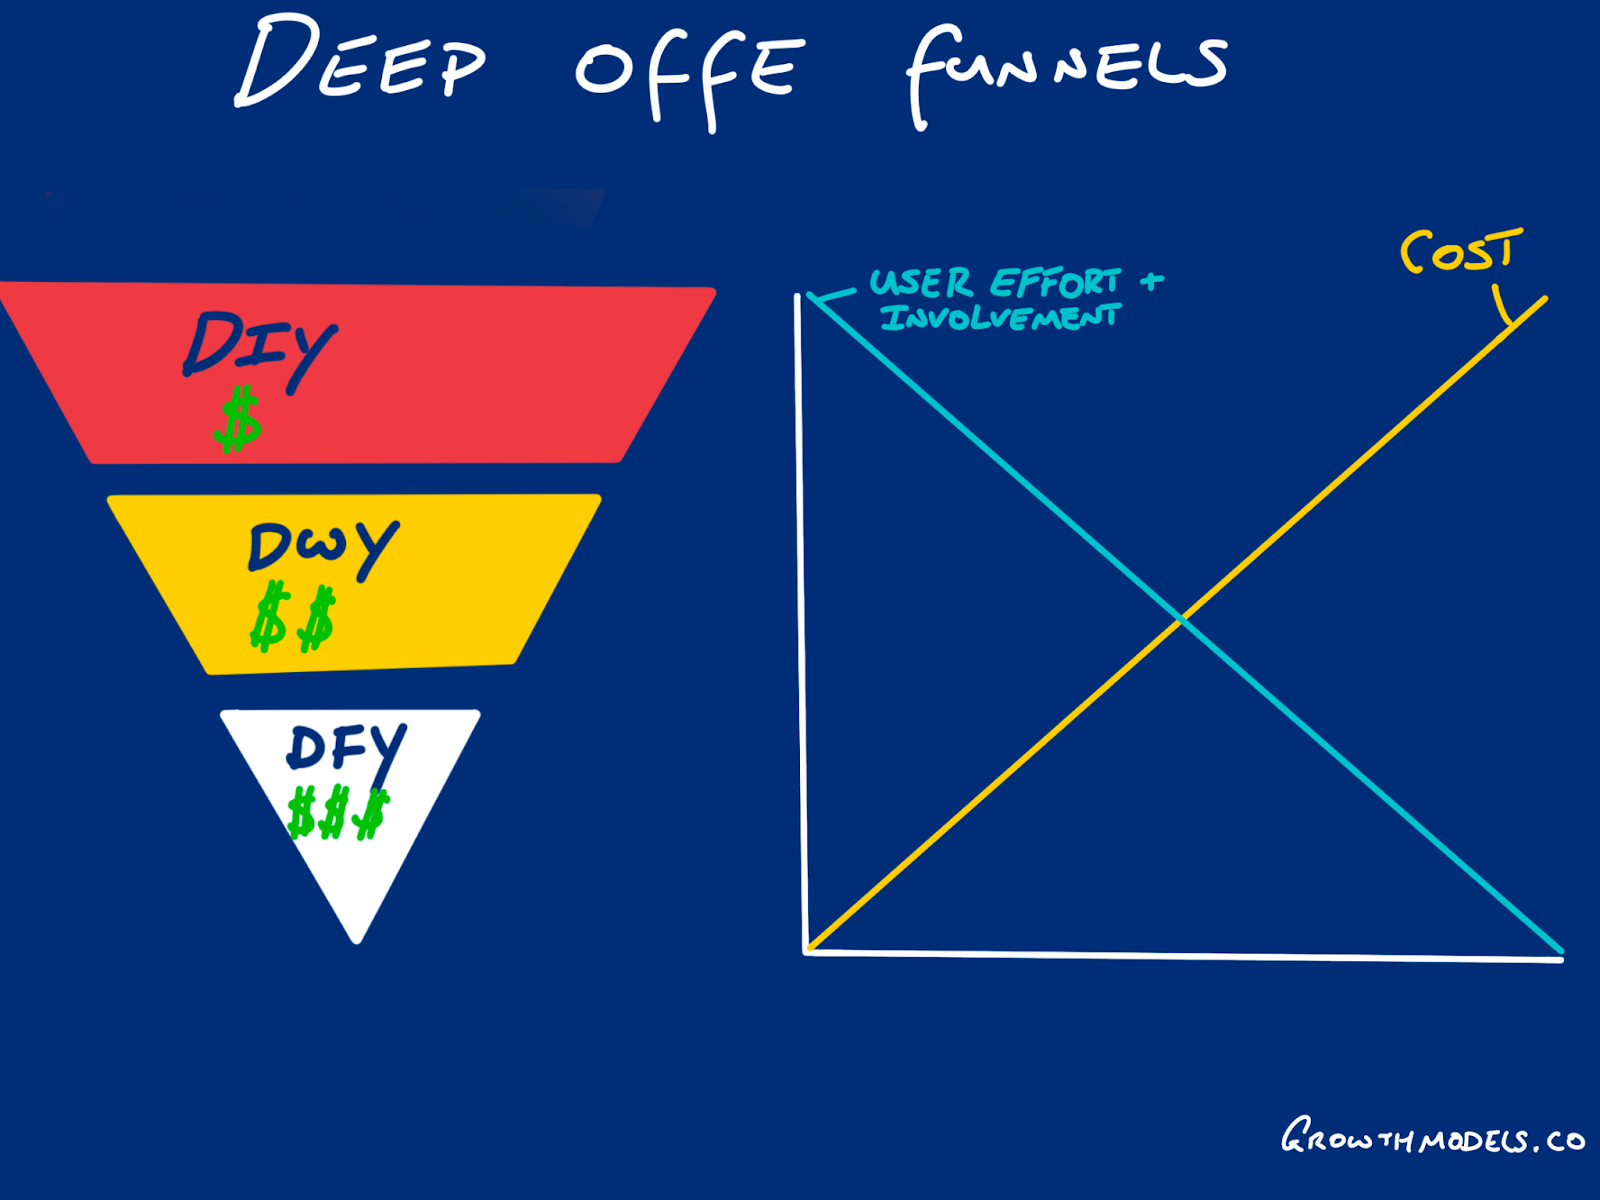 Deep offer funnels